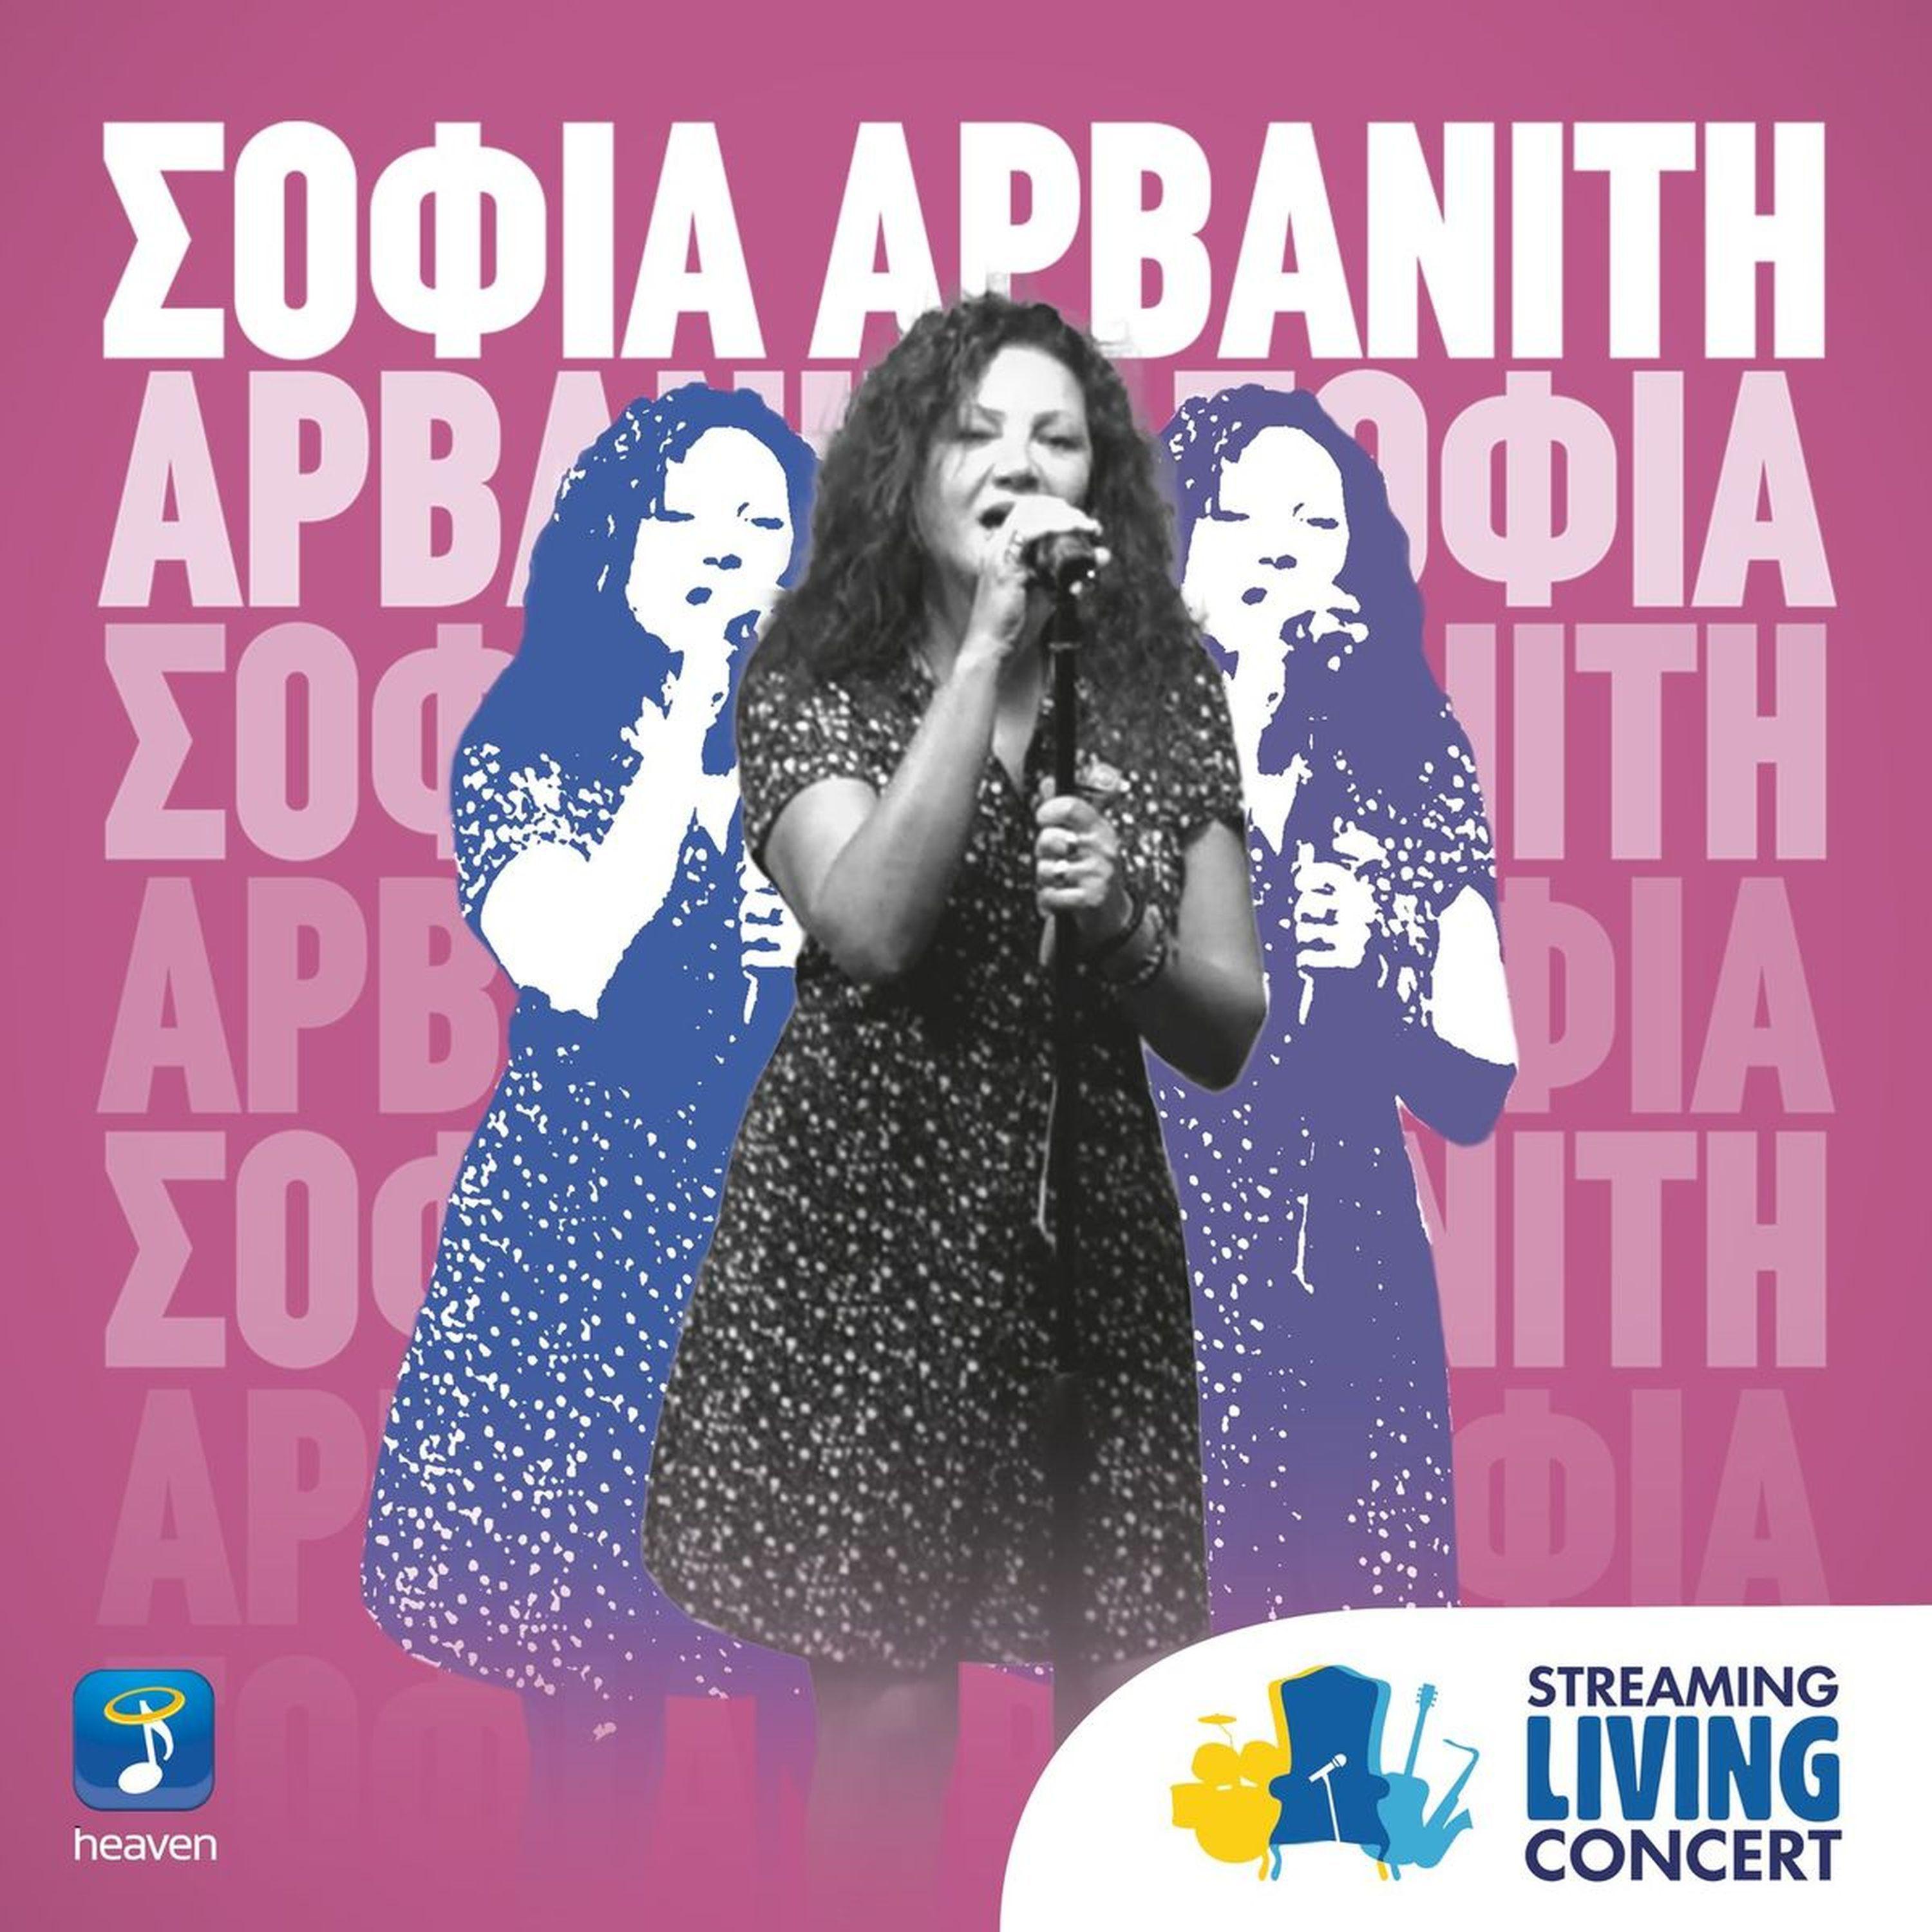 Sofia Arvaniti - Petheno Stin Erimia (Streaming Living Concert)